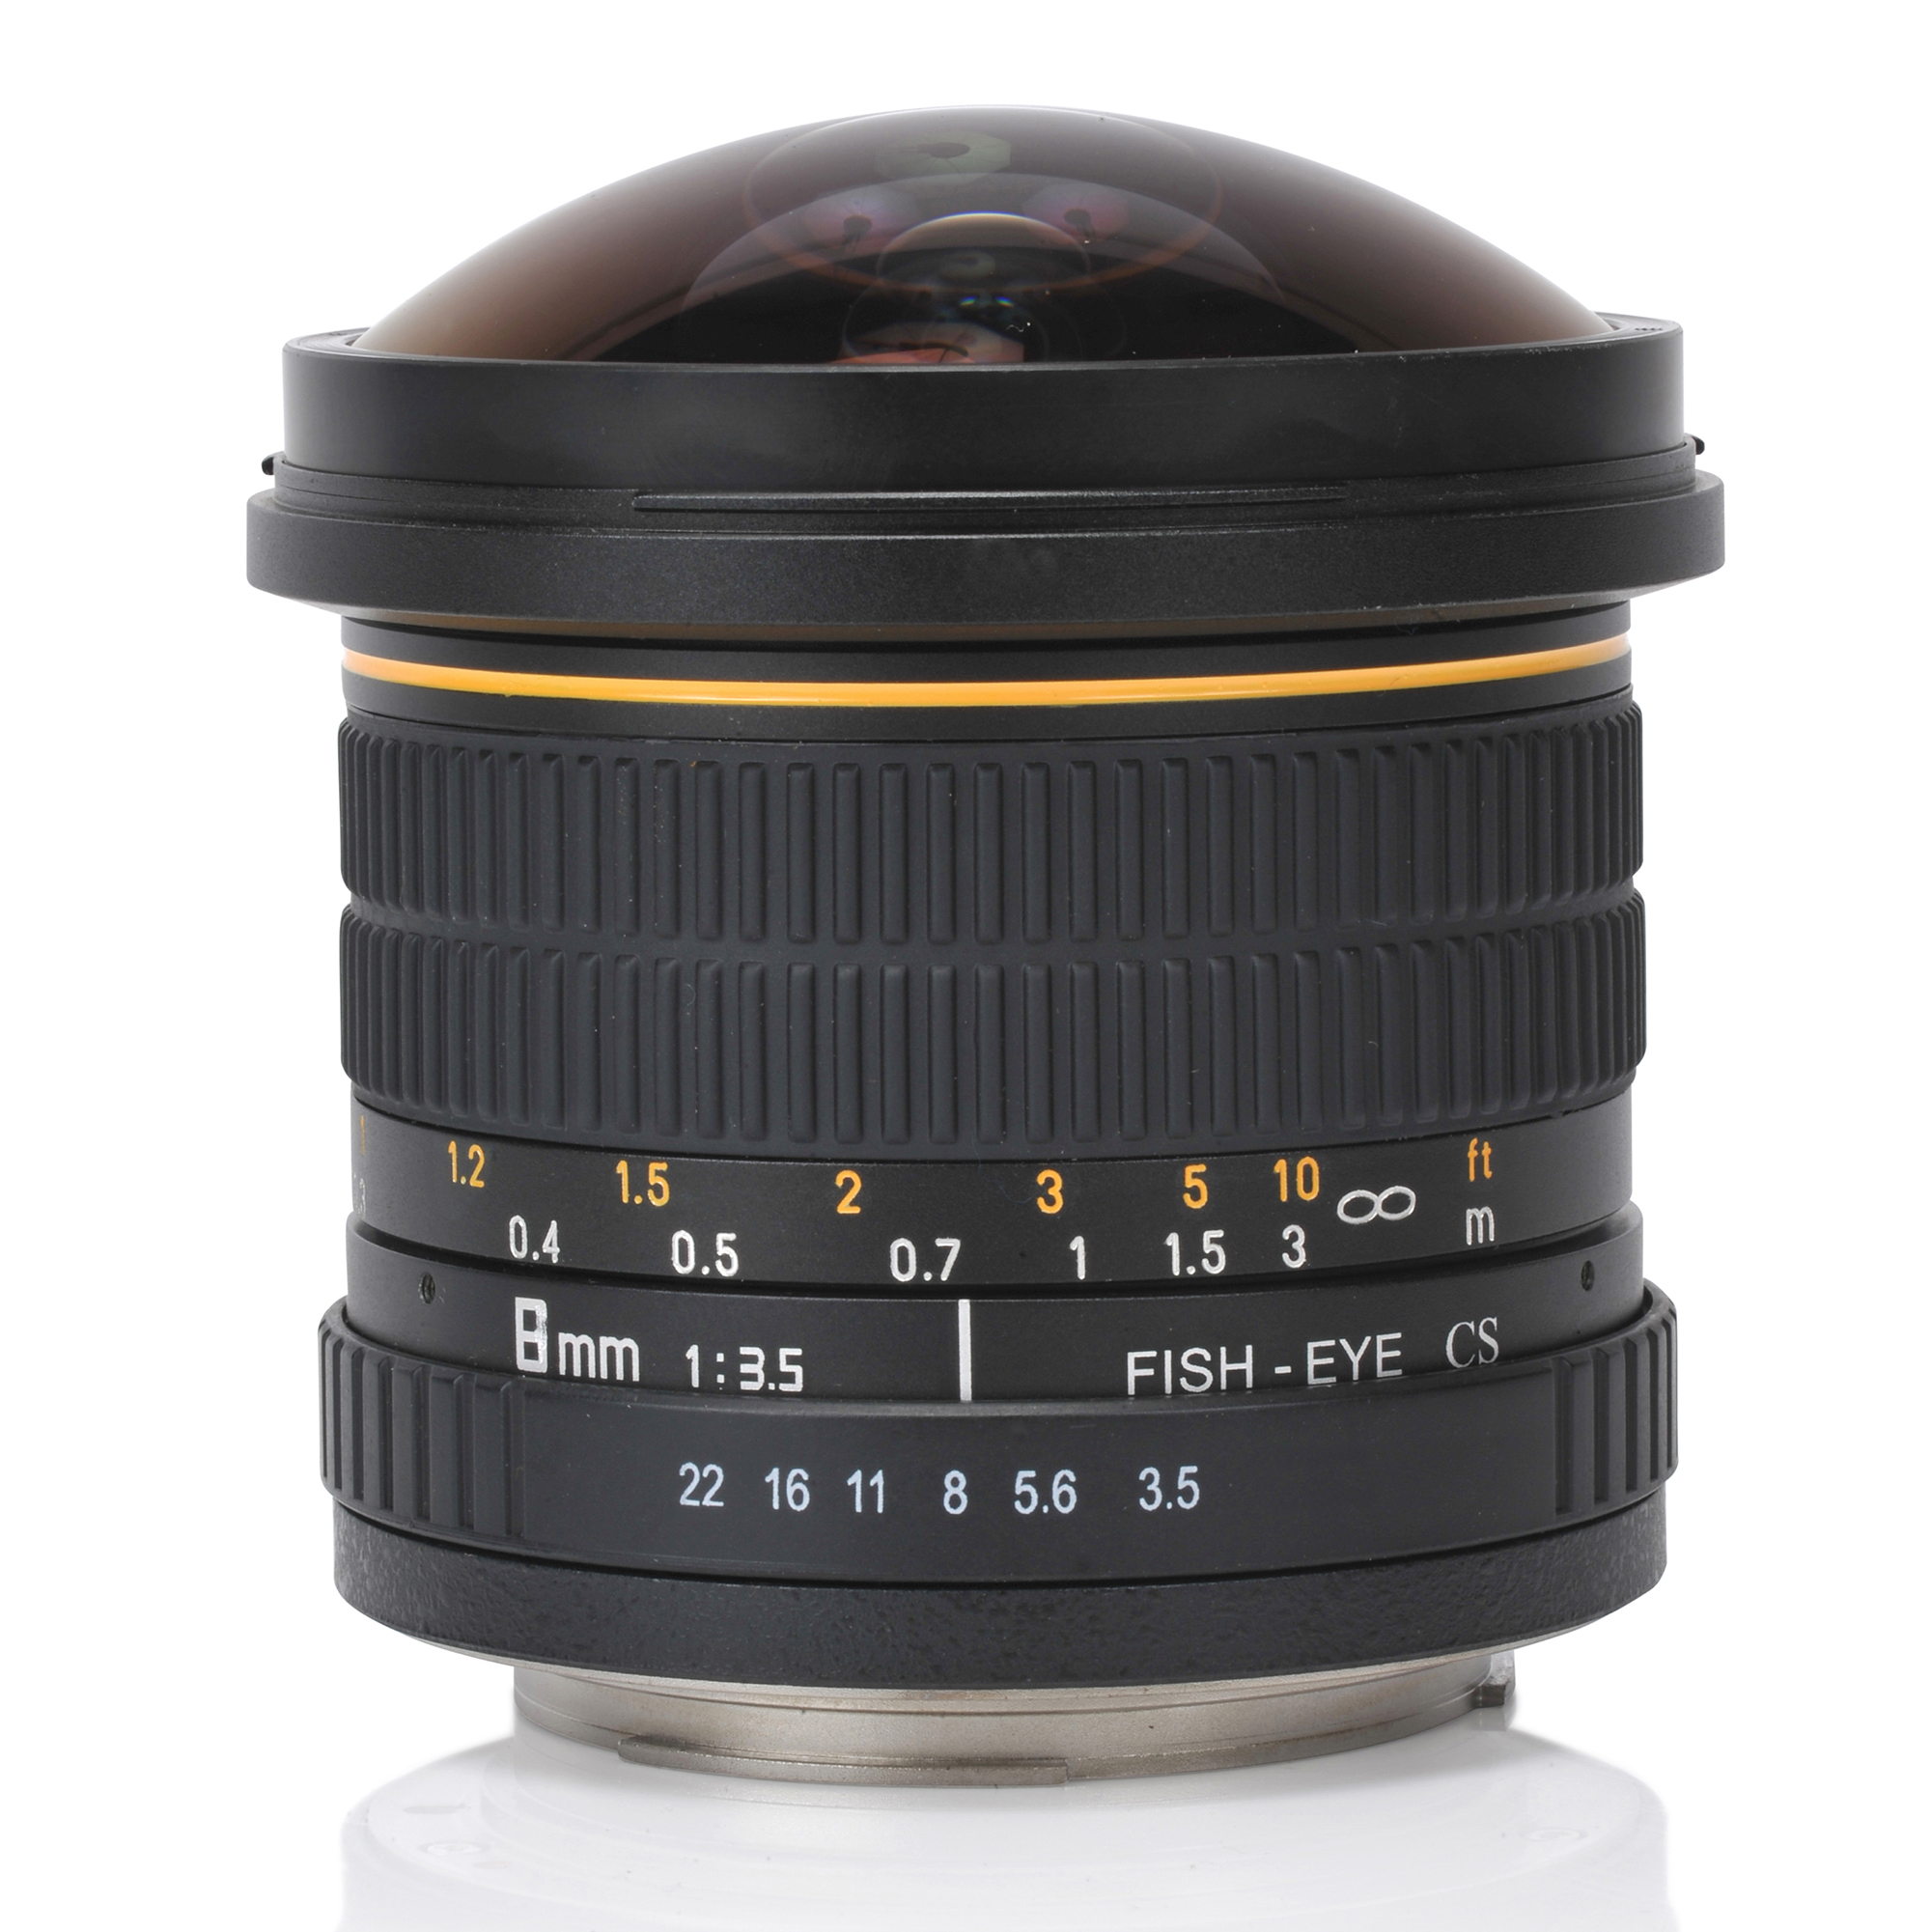 Oshiro 8mm f/3.5 LD UNC AL Wide Angle Fisheye Lens for Olympus PEN E-M1, E-M5, E-M10, E-PL7, E-P5, E-PL5, E-PM2, E-P1, E-P2, E-PL1, E-PL1s, PL2 Micro Four Thirds Mirrorless Digital Cameras - image 2 of 7